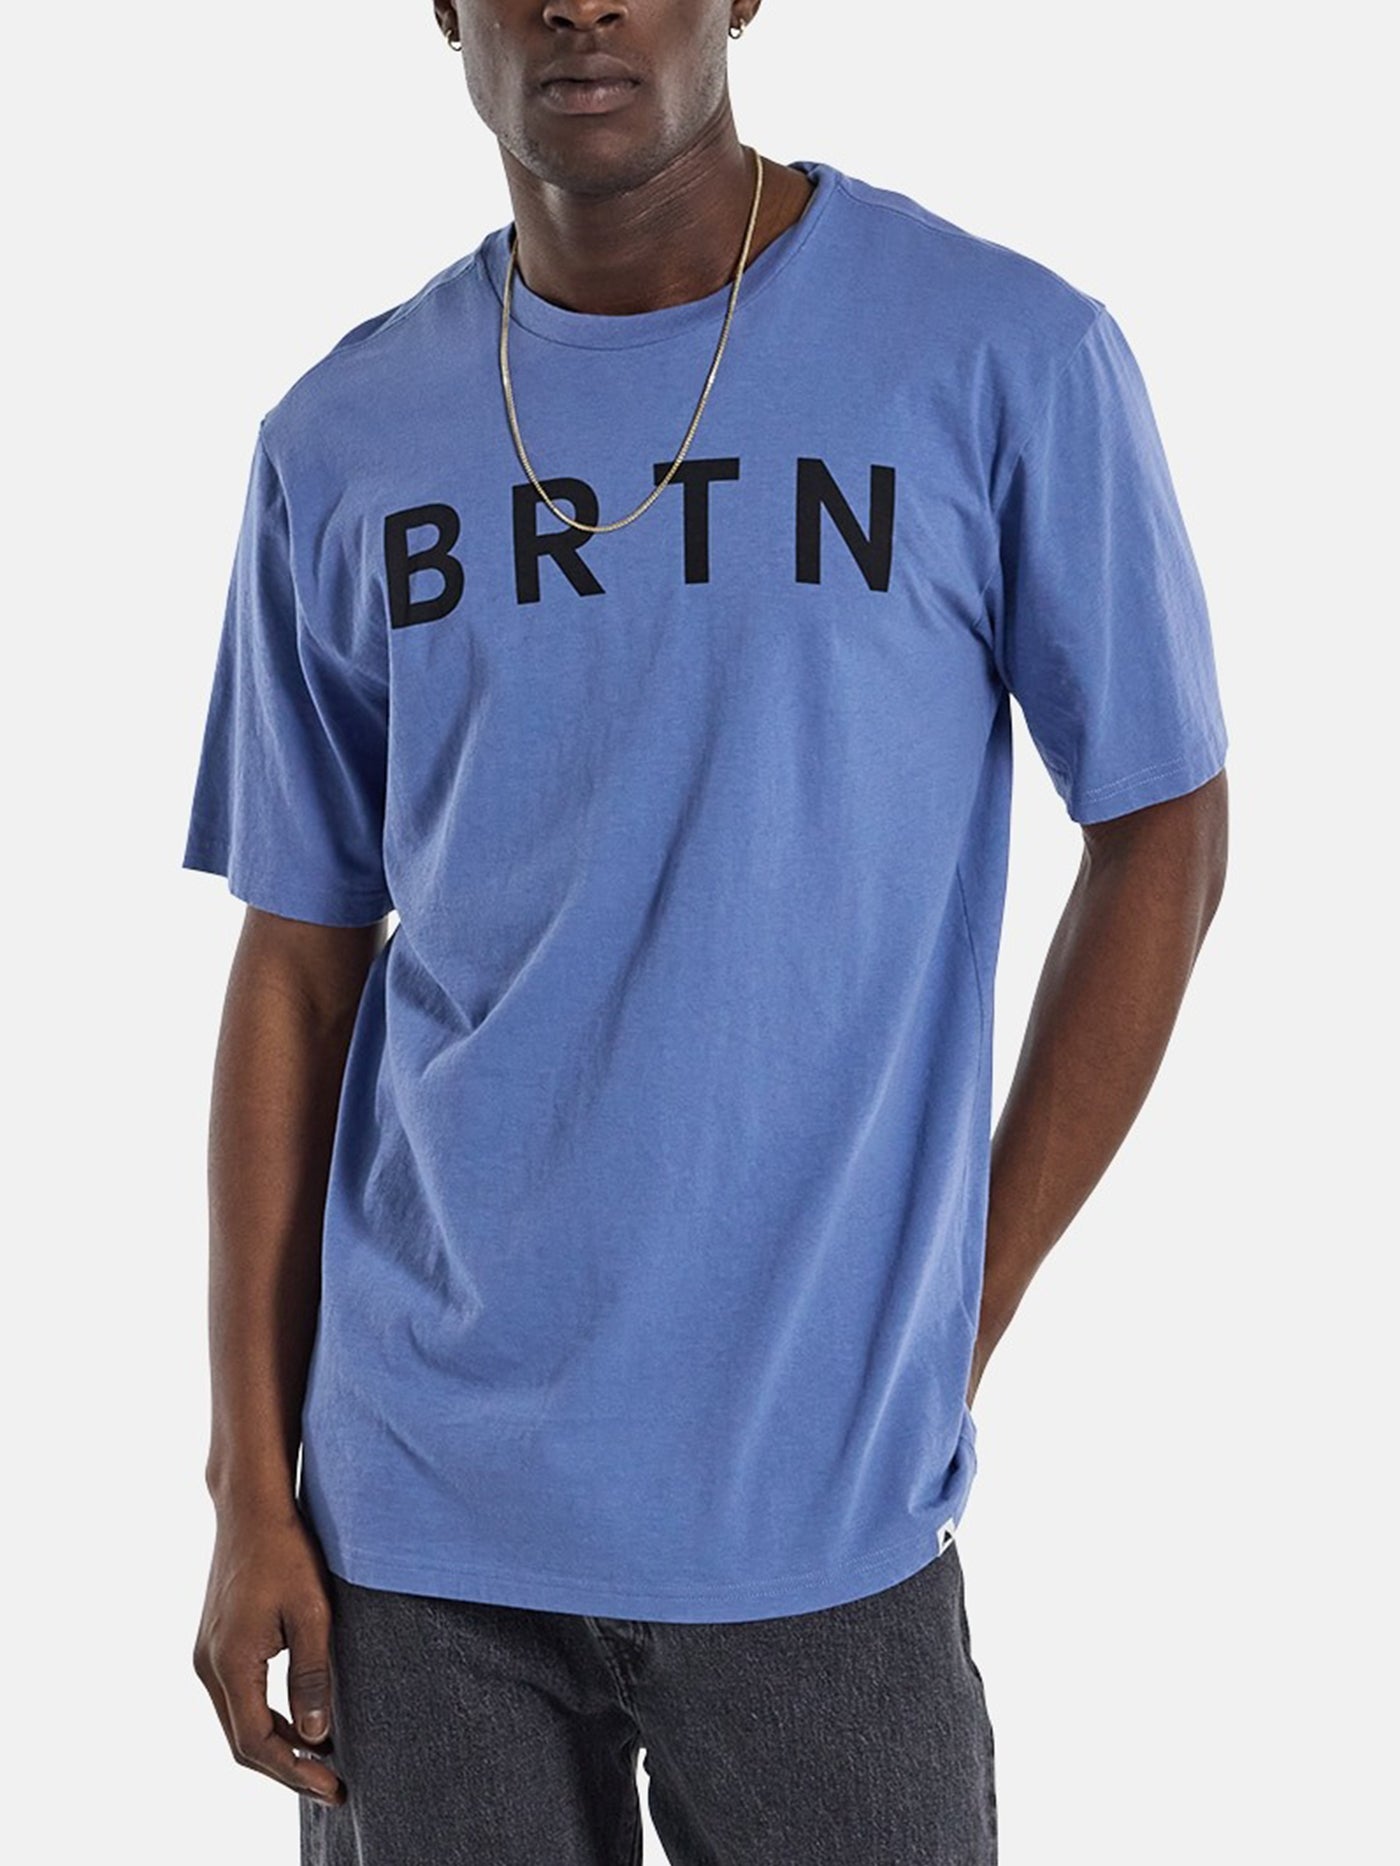 Burton BRTN T-Shirt